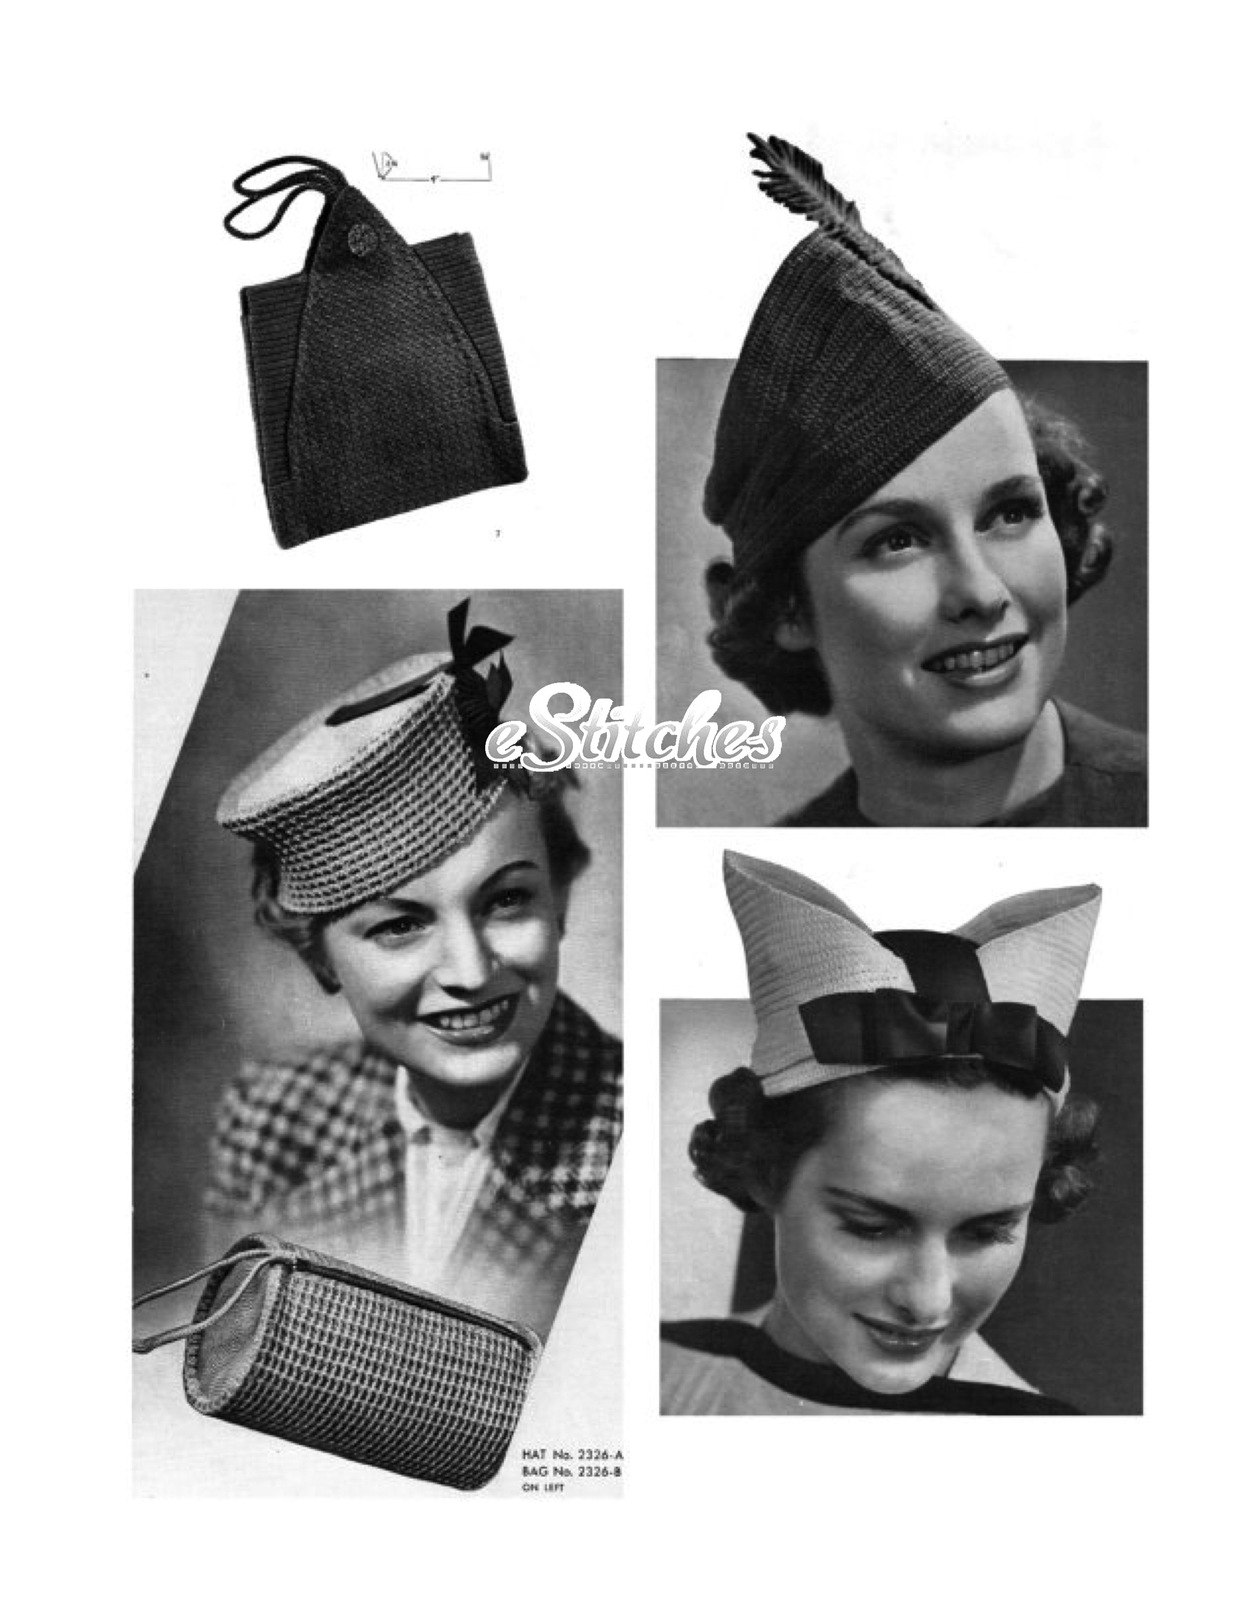 Шляпы 50 годов. Шанель шляпки 1930е. Грейс Келли в шляпке. Мода шляпок Англия 40е. Мода 30х головной убор.